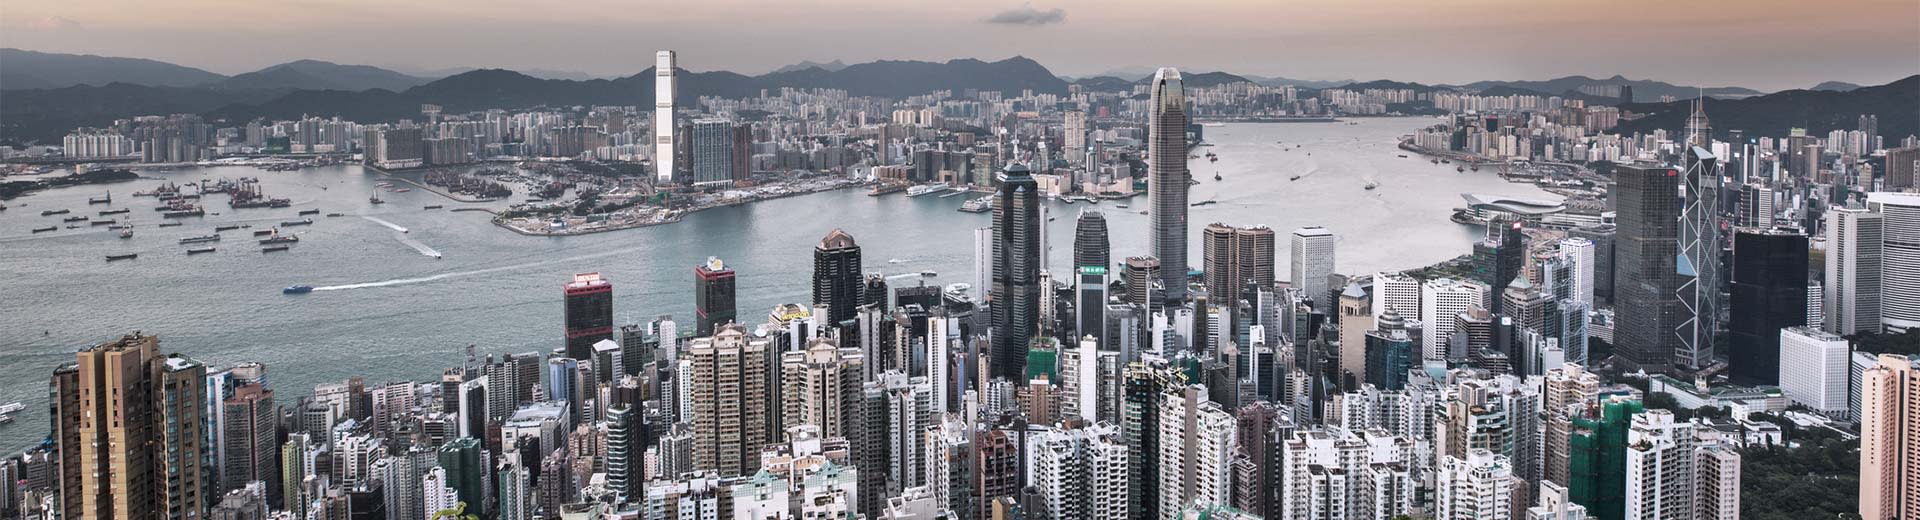 Die weitläufige Masse der Wolkenkratzer in der berühmten Stadt Hongkong an einem grauen Tag.